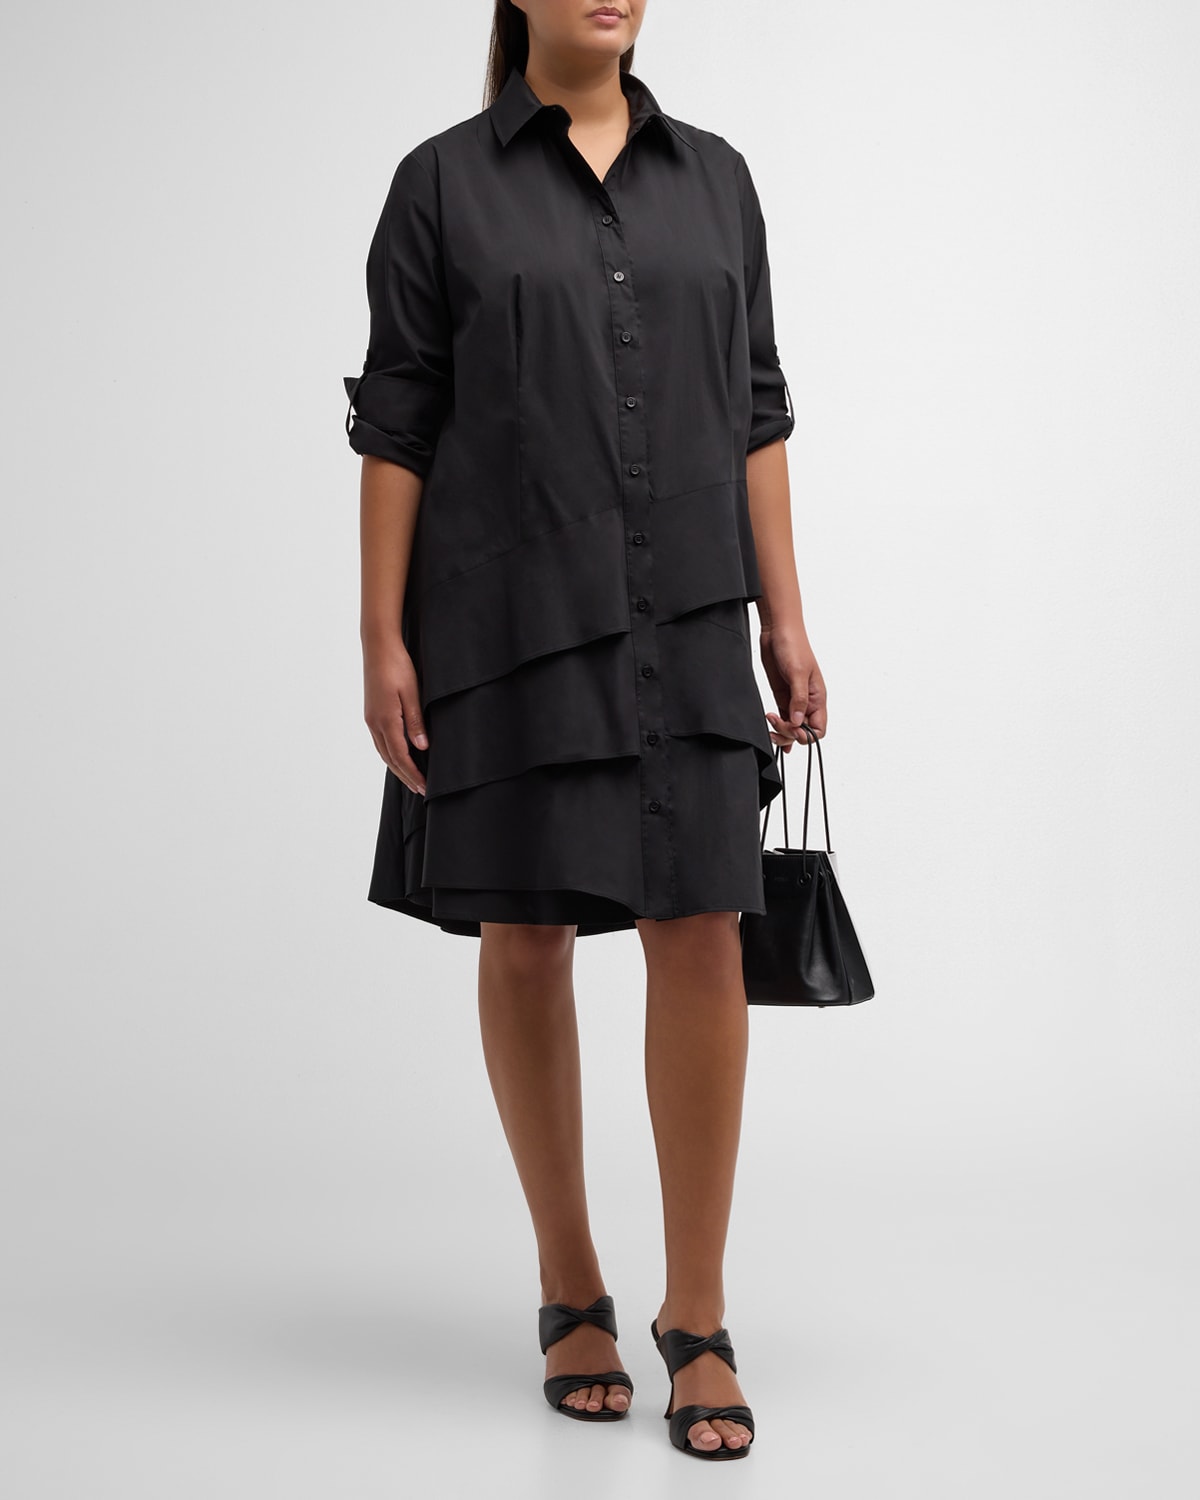 Finley Plus Size Jenna Ruffle-Trim Midi Shirtdress